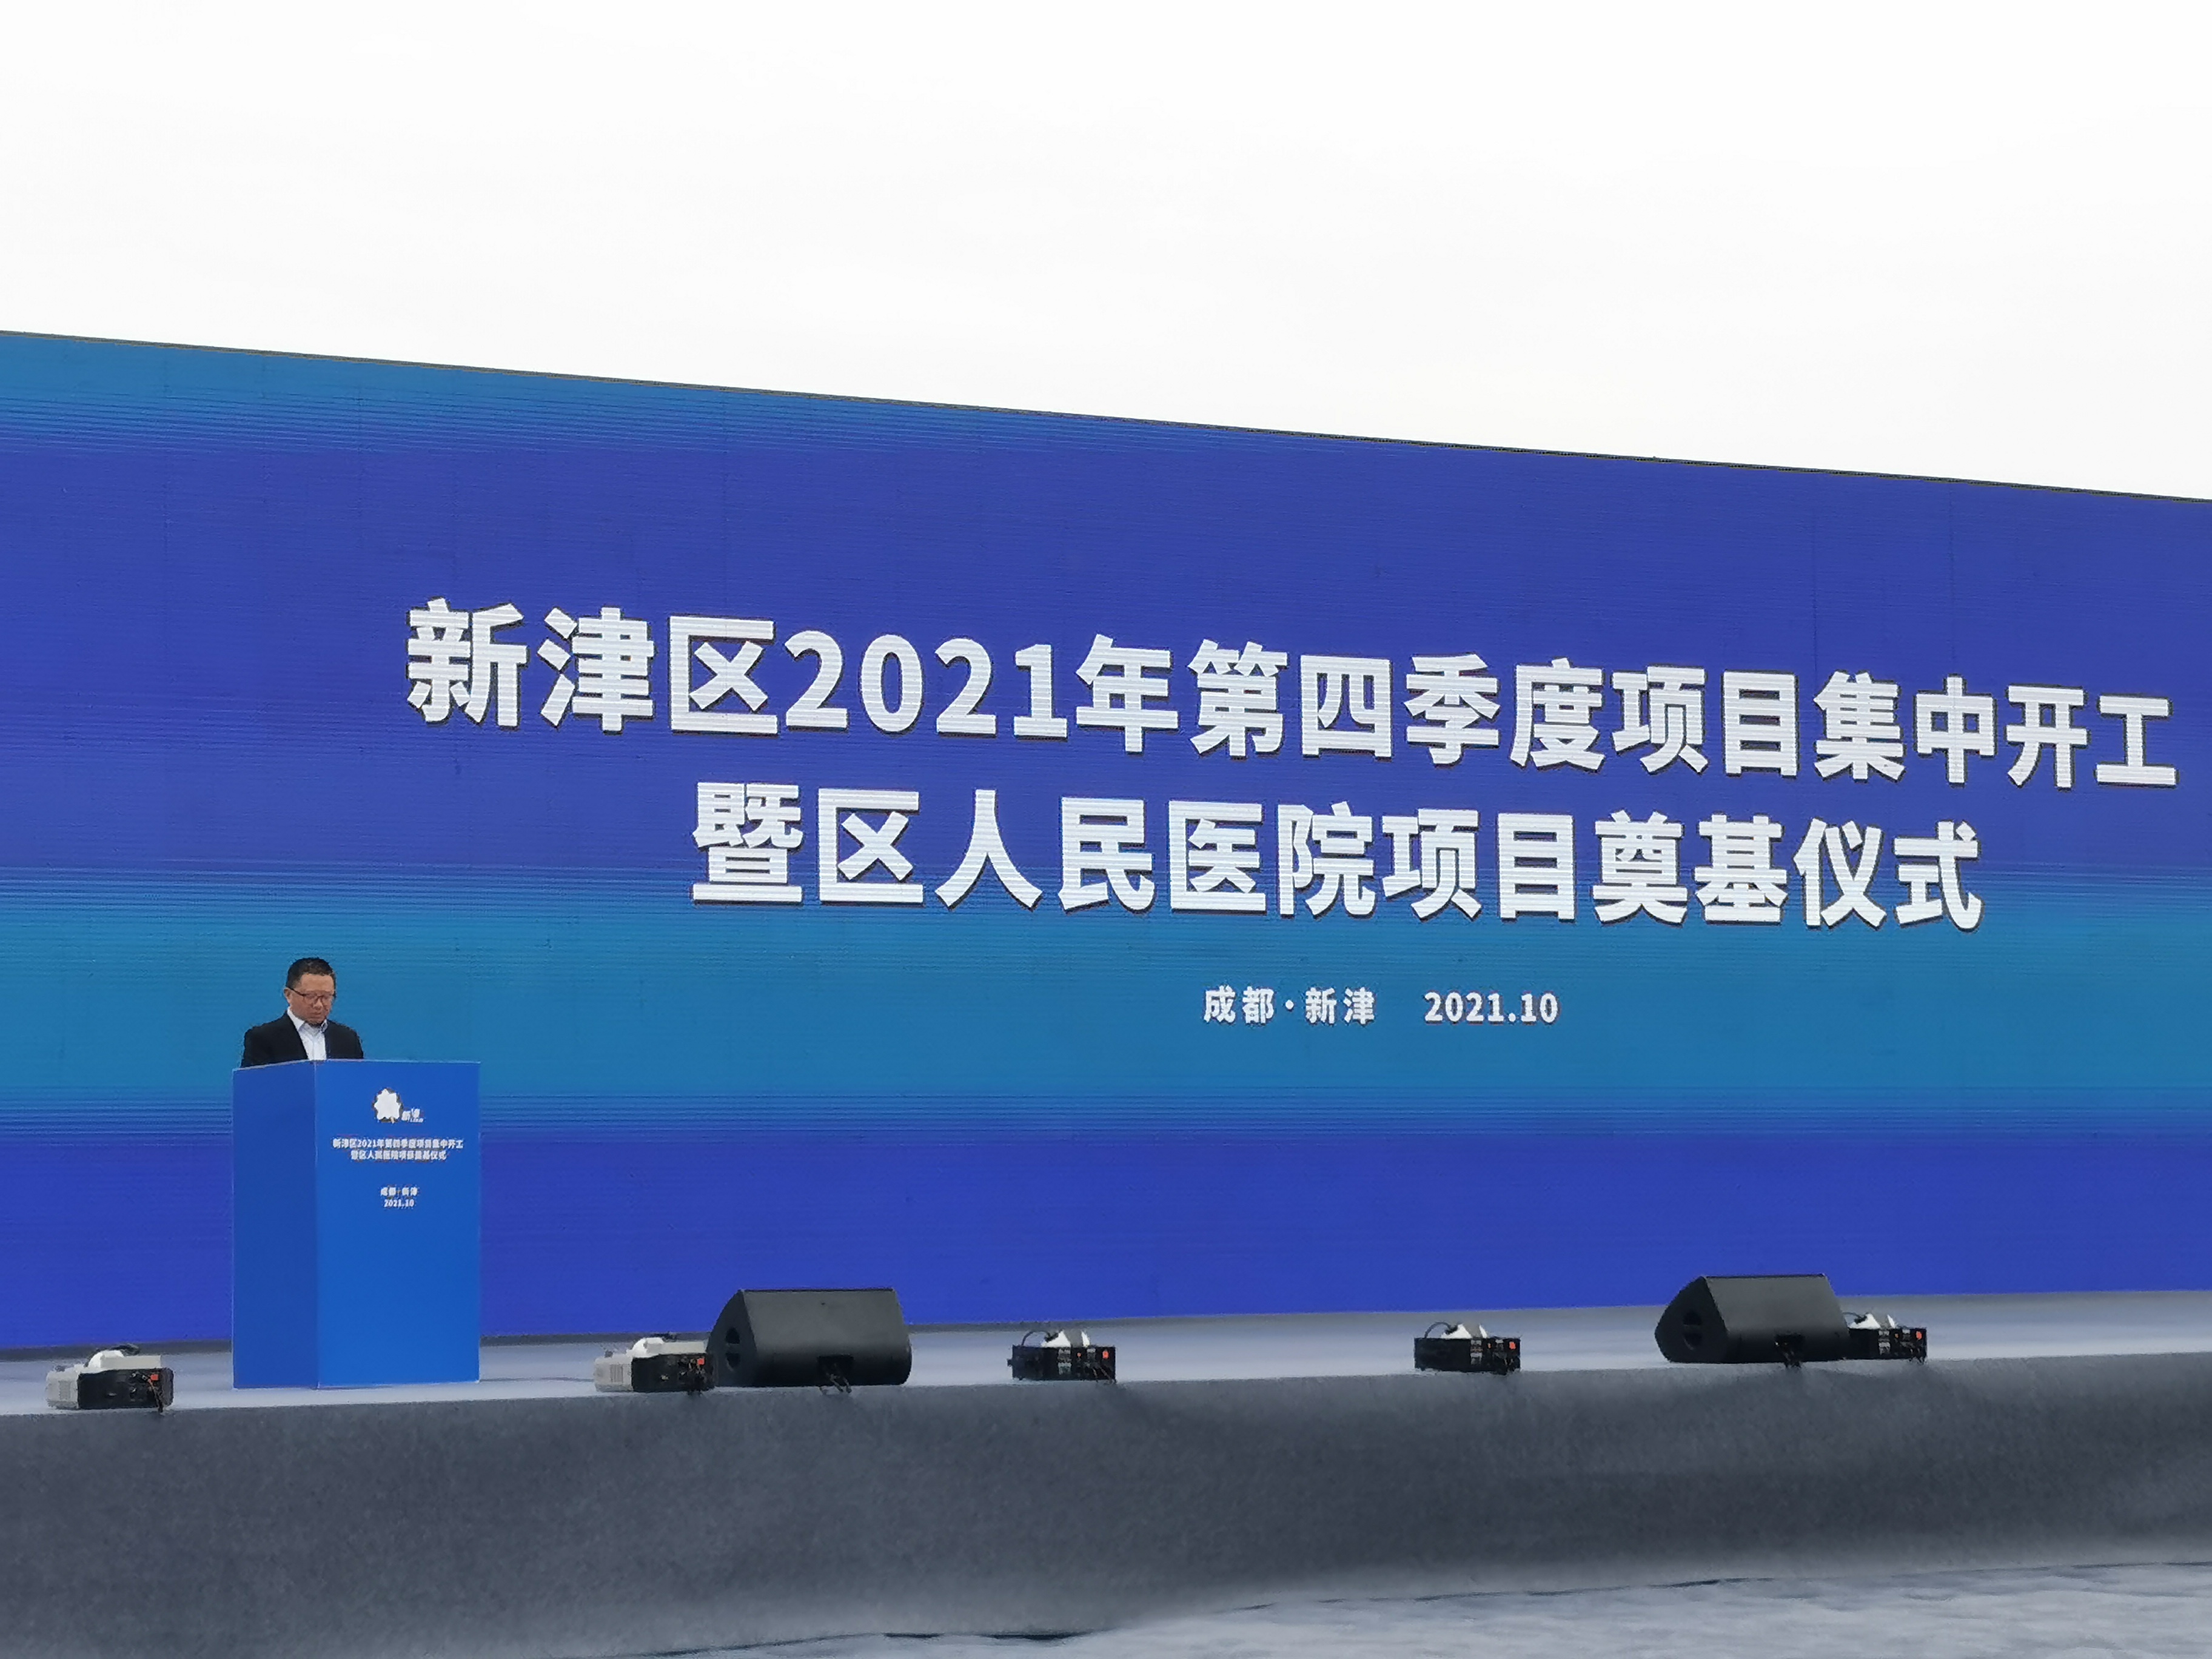 达威股份参加“新津区2021年第四季度项目集中开工仪式”